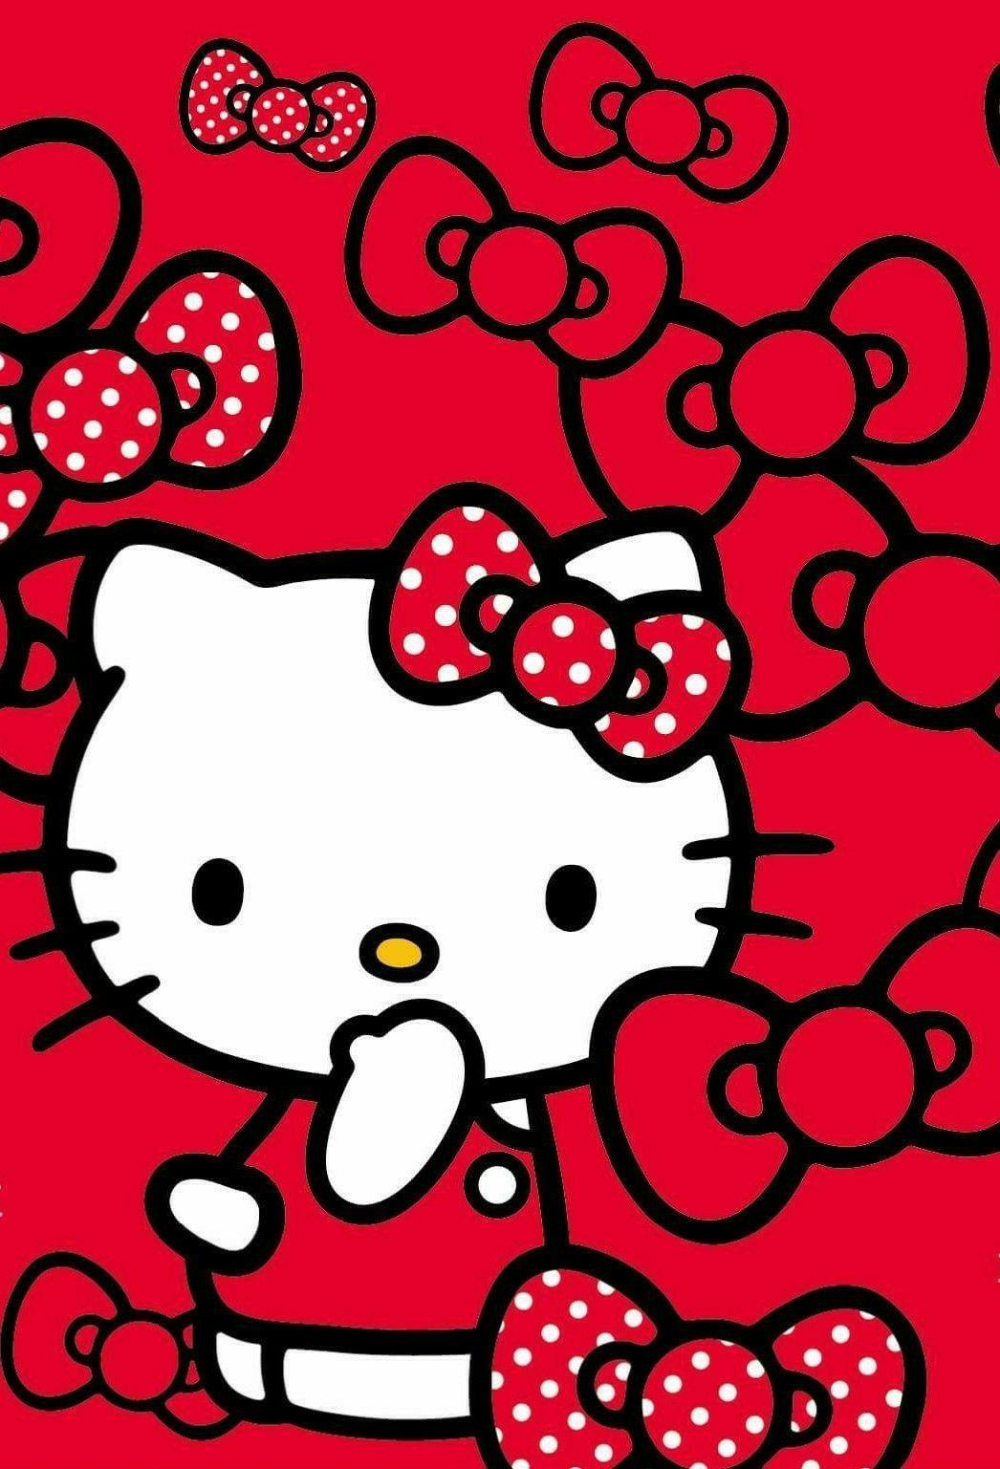 Hình nền Hello Kitty màu đỏ là điều tuyệt vời để cho căn phòng của bạn cảm thấy rực rỡ và đầy sức sống. Hello Kitty luôn là sự lựa chọn hoàn hảo khi bạn muốn tạo nên một không gian đáng yêu và ngọt ngào. Hãy xem hình và tận hưởng vẻ đẹp của nó.